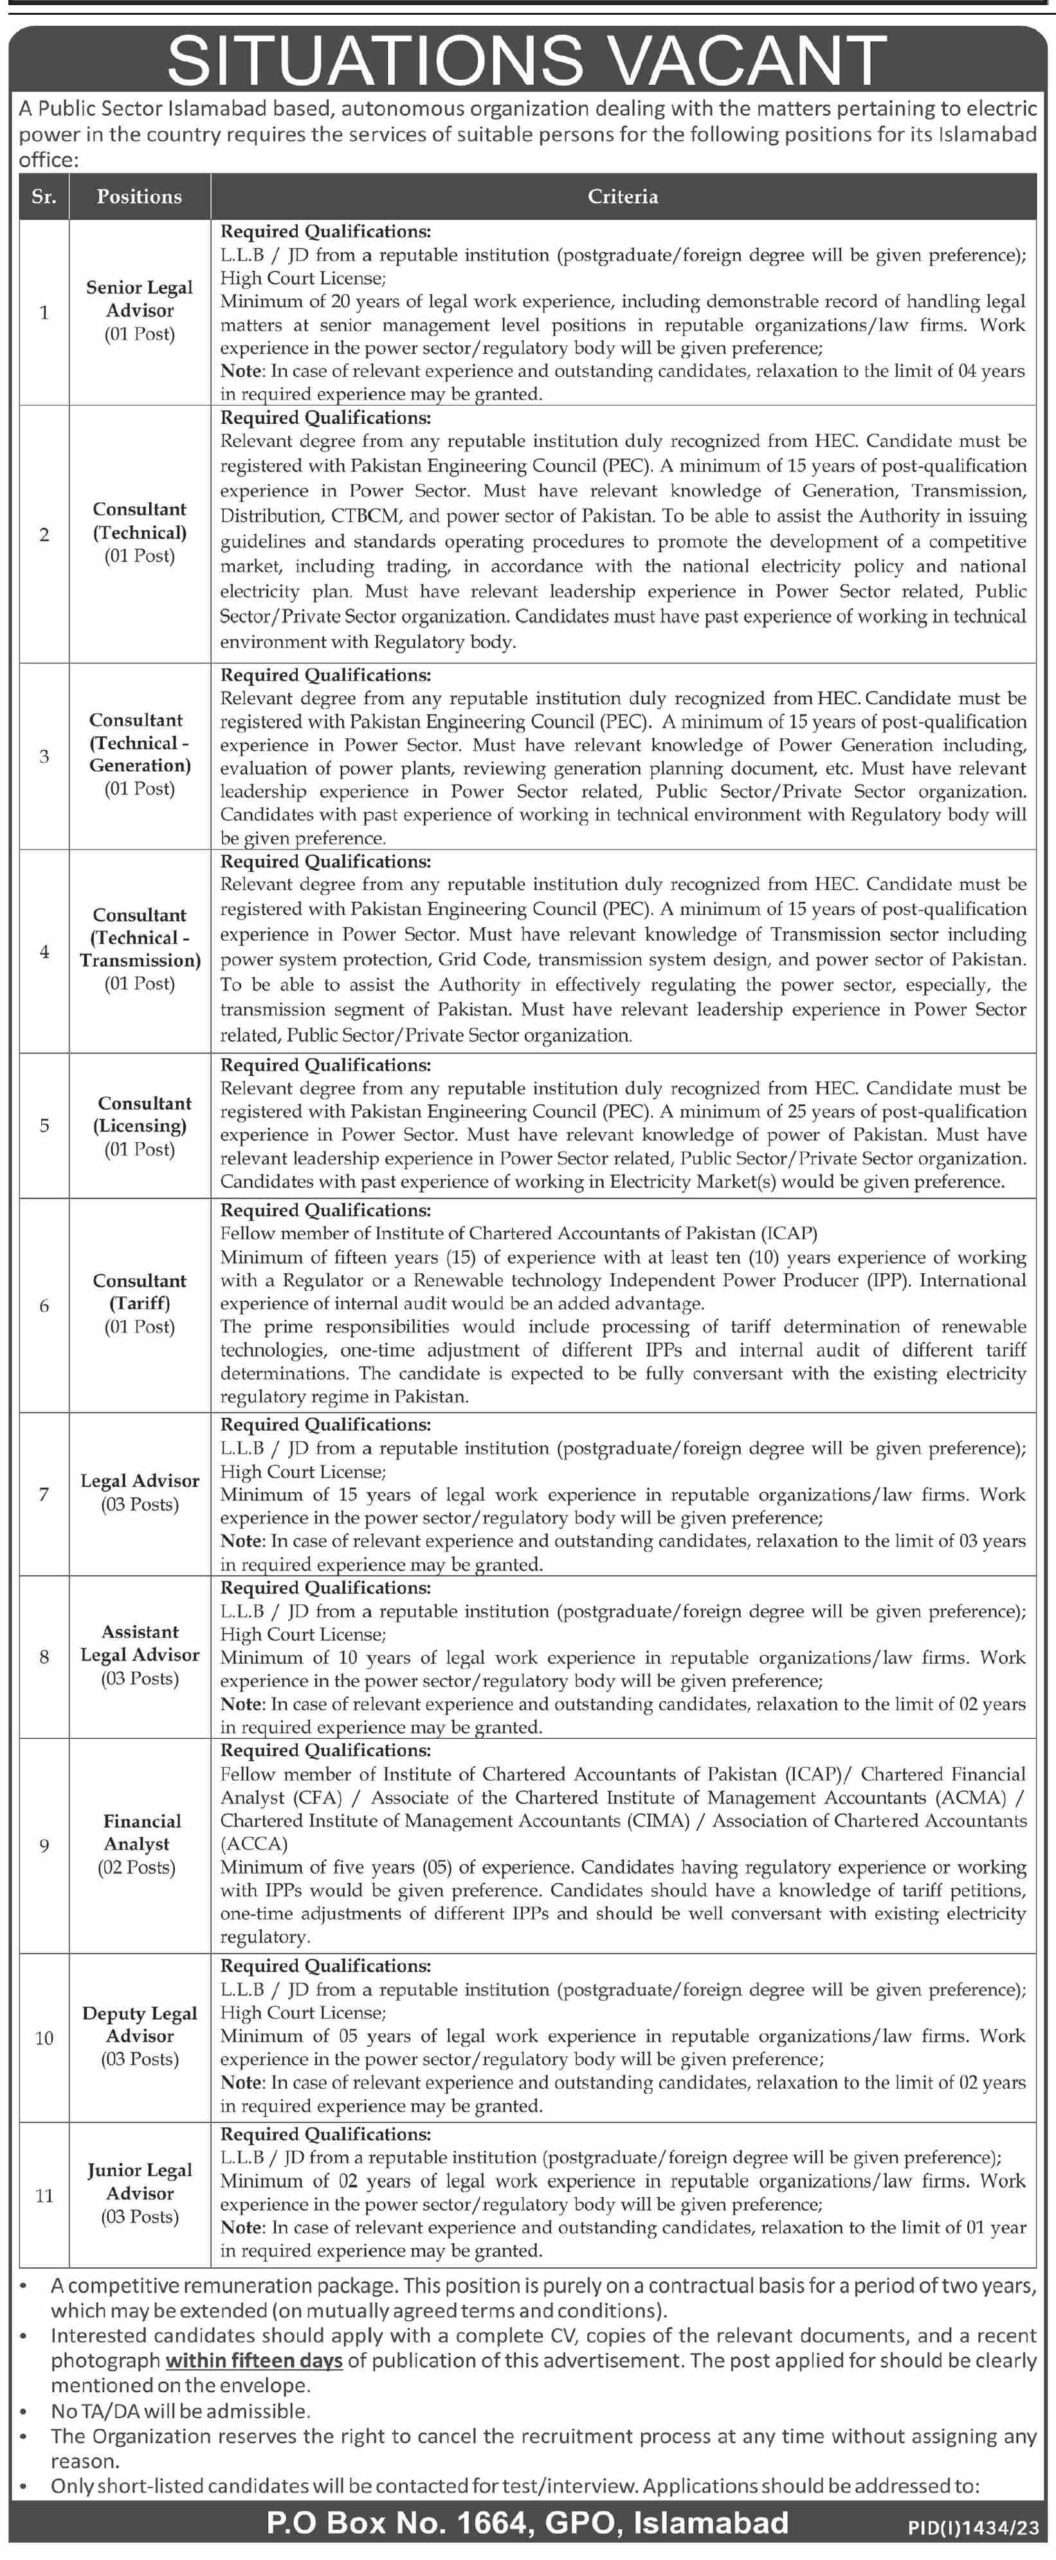 Public Sector Islamabad Jobs